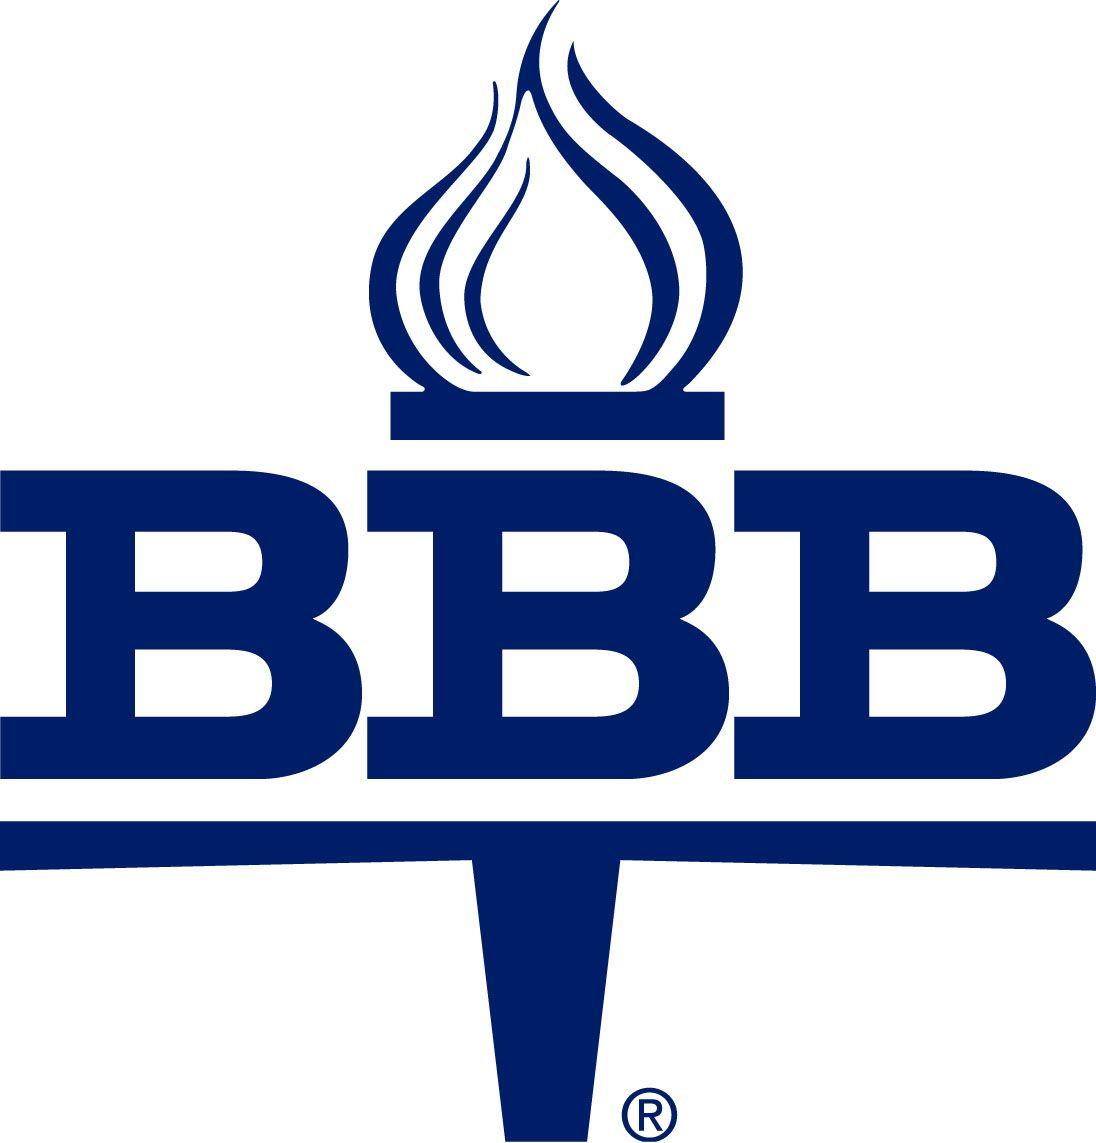 BBB Logo - Better business bureau Logos